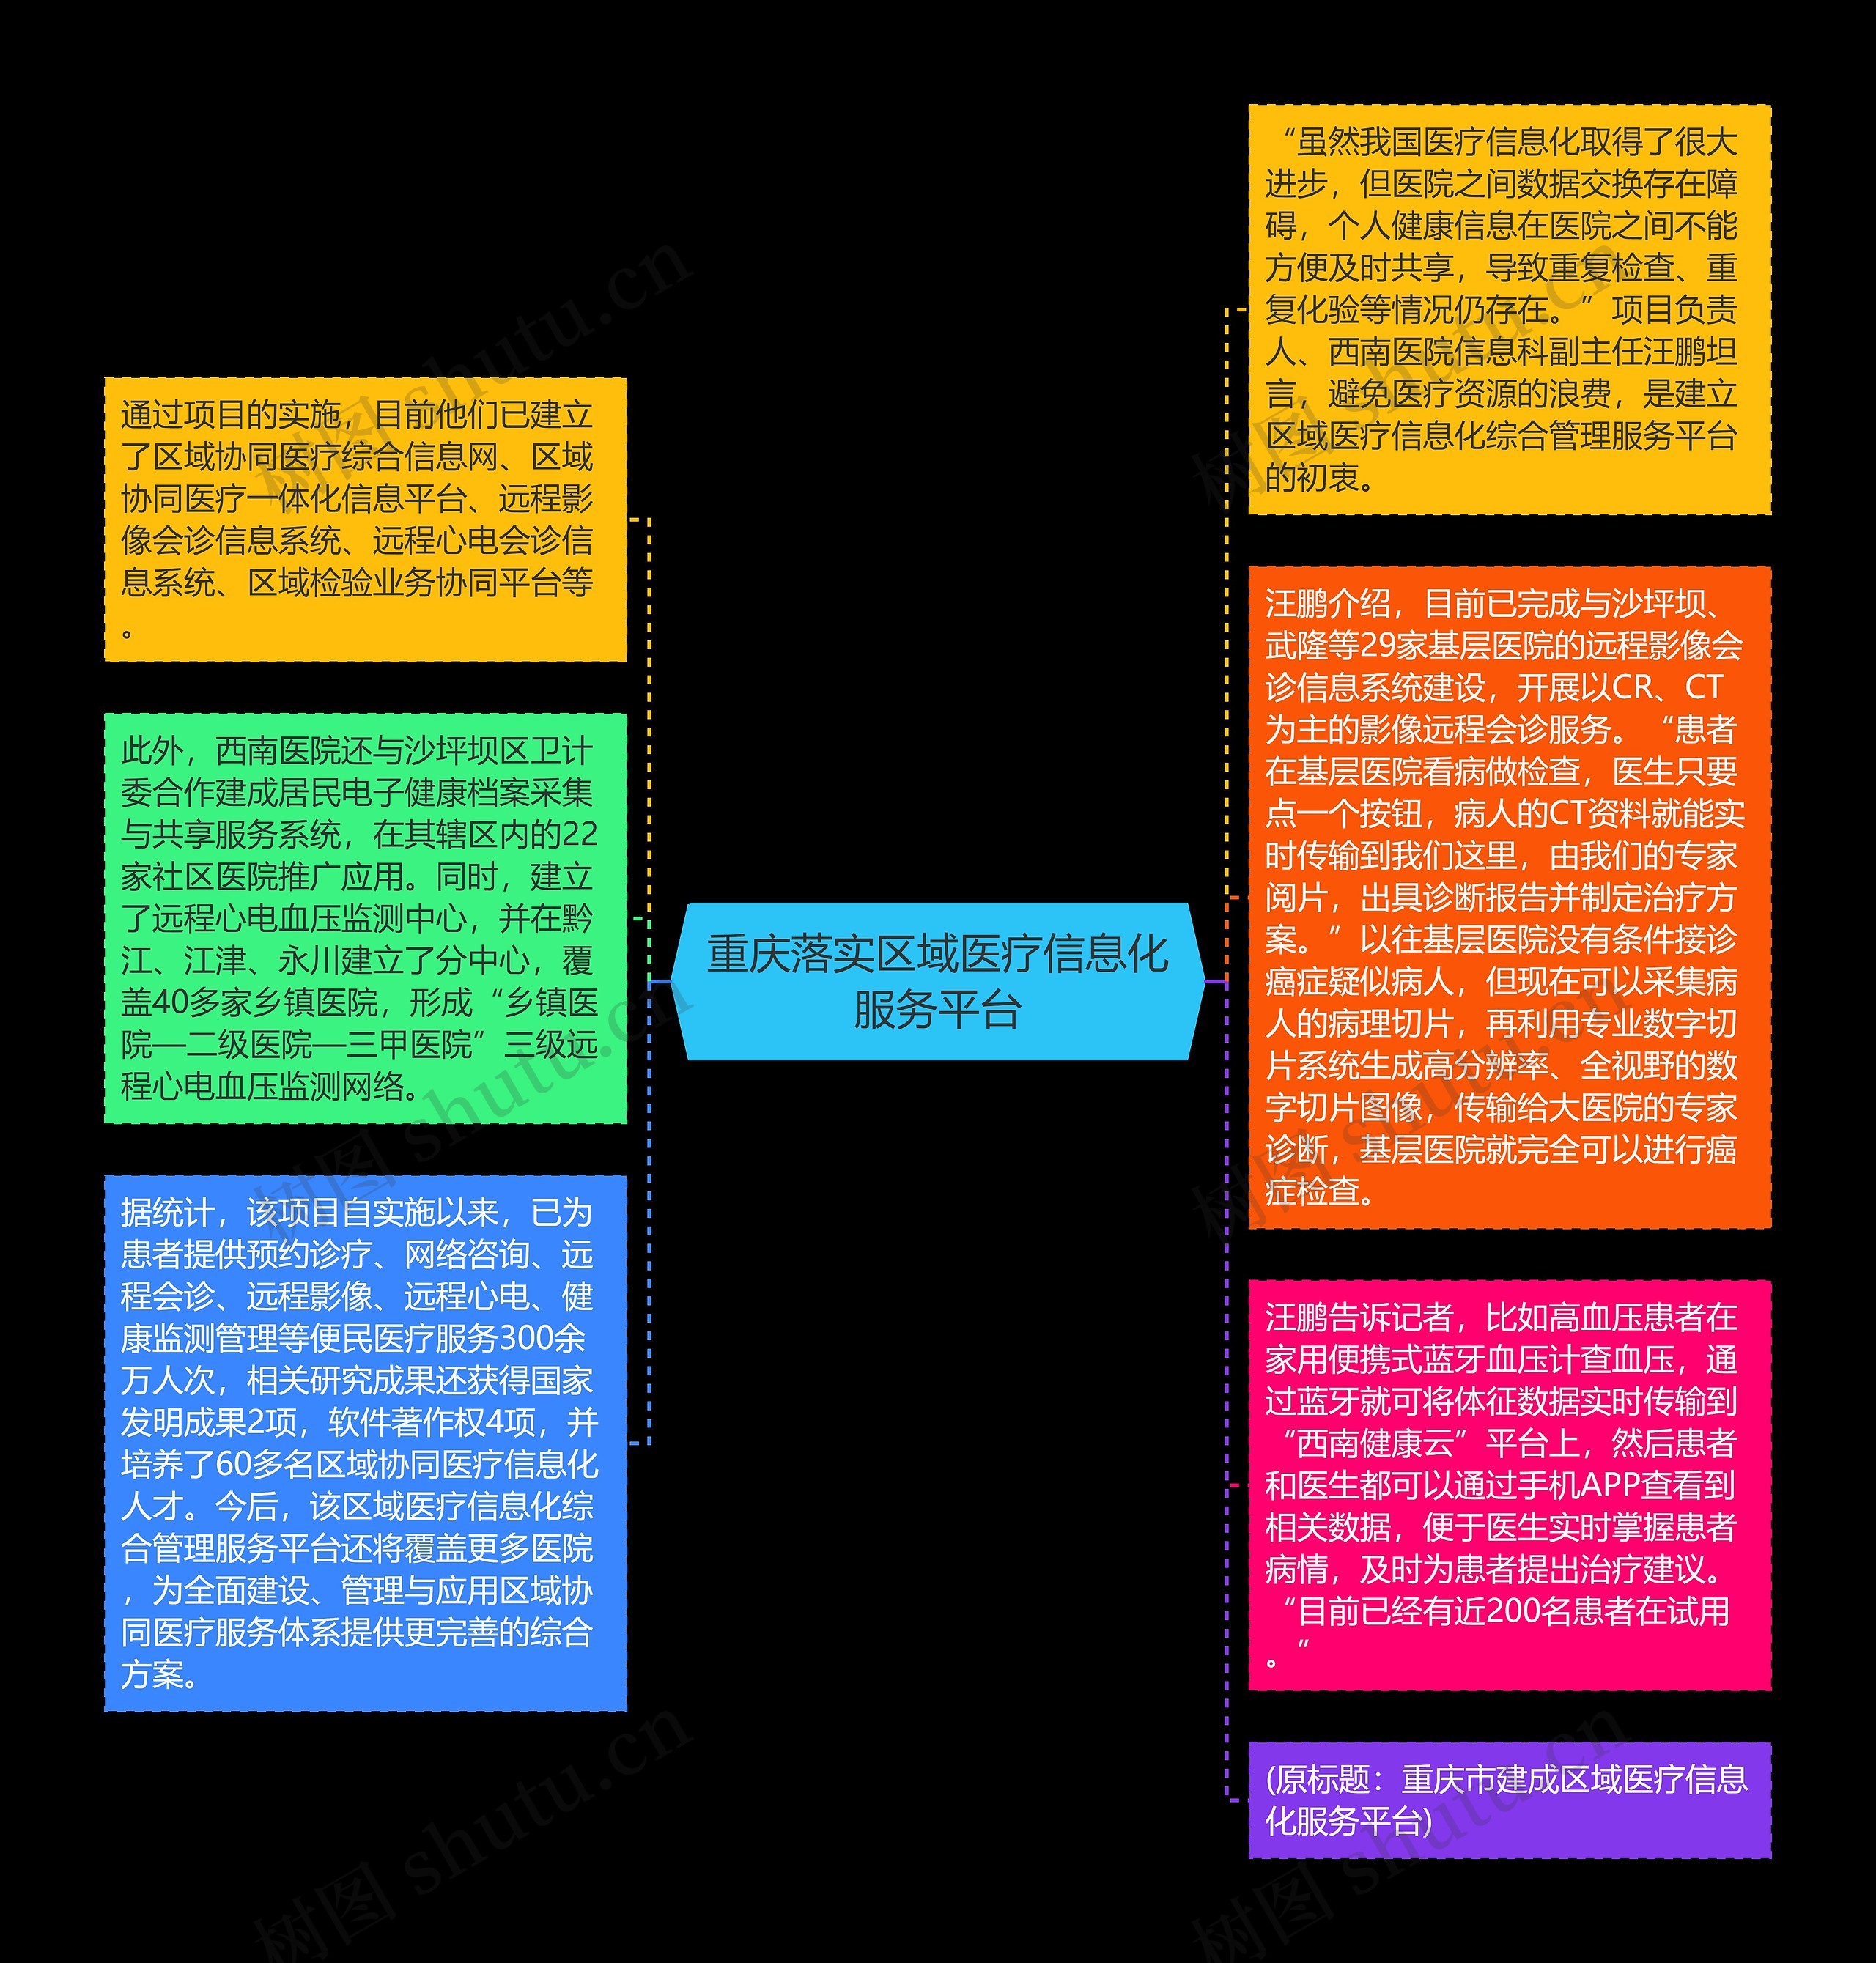 重庆落实区域医疗信息化服务平台